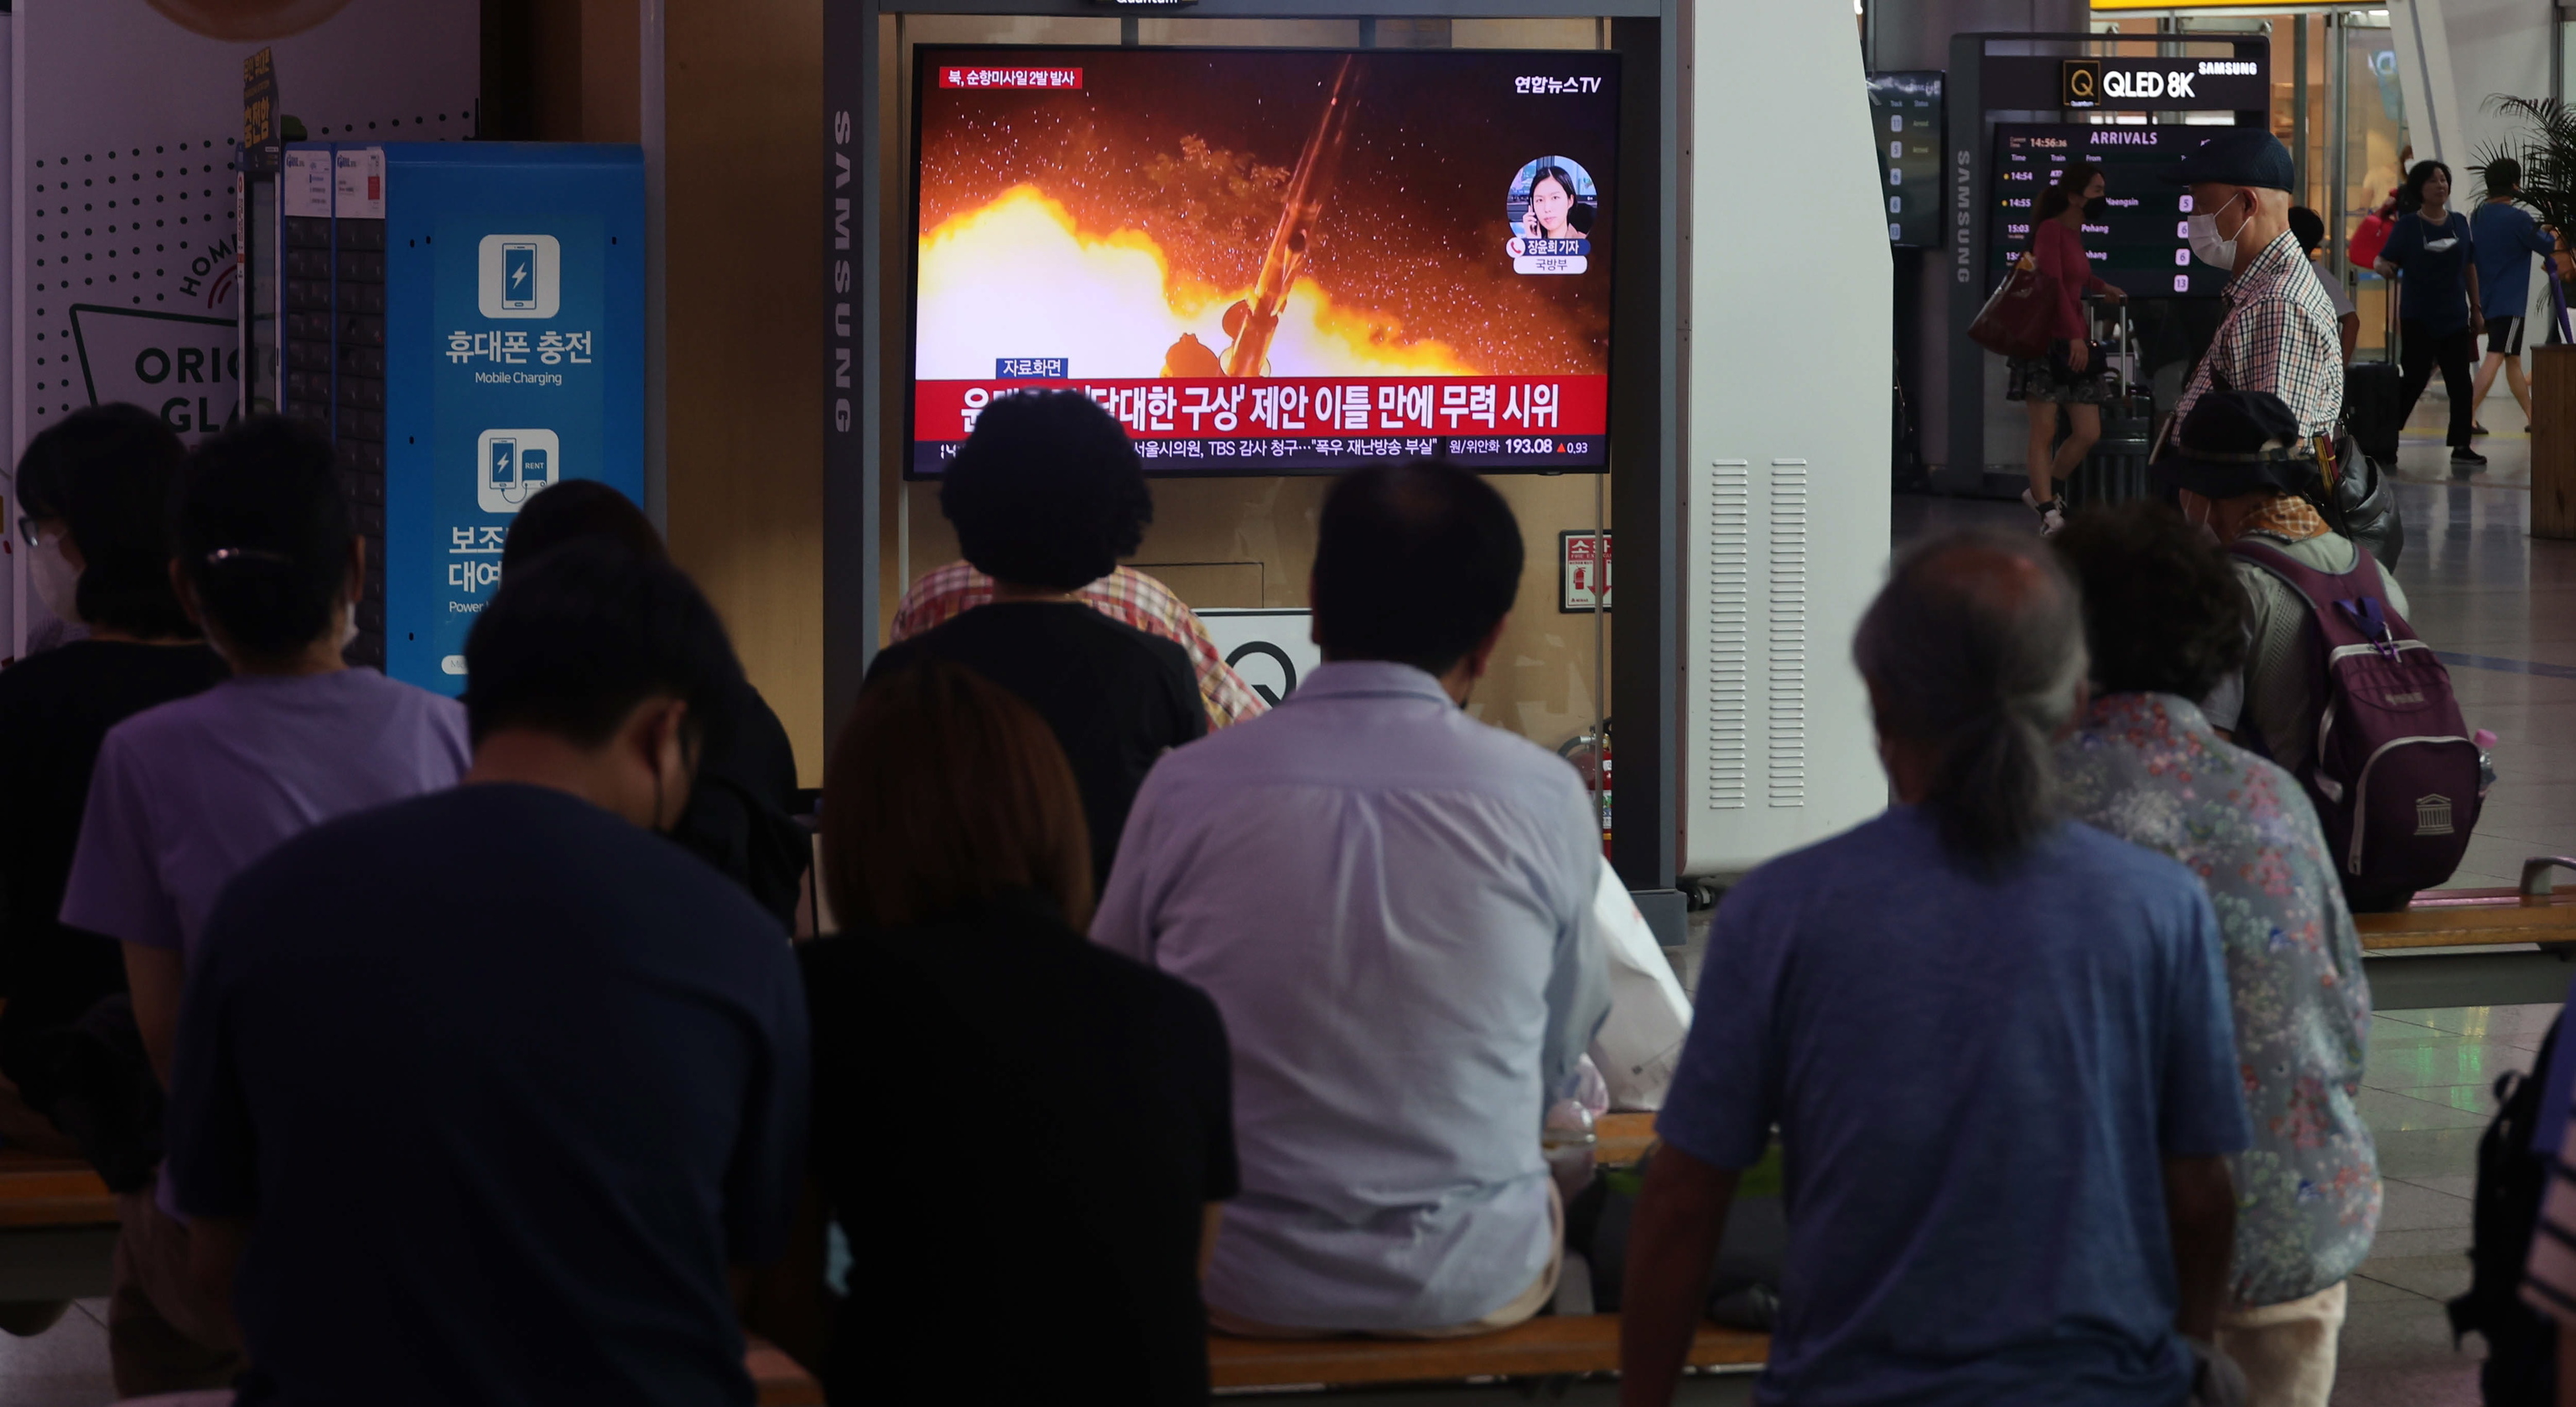 Estación de transporte público en Seúl con noticias sobre el lanzamiento de misiles.